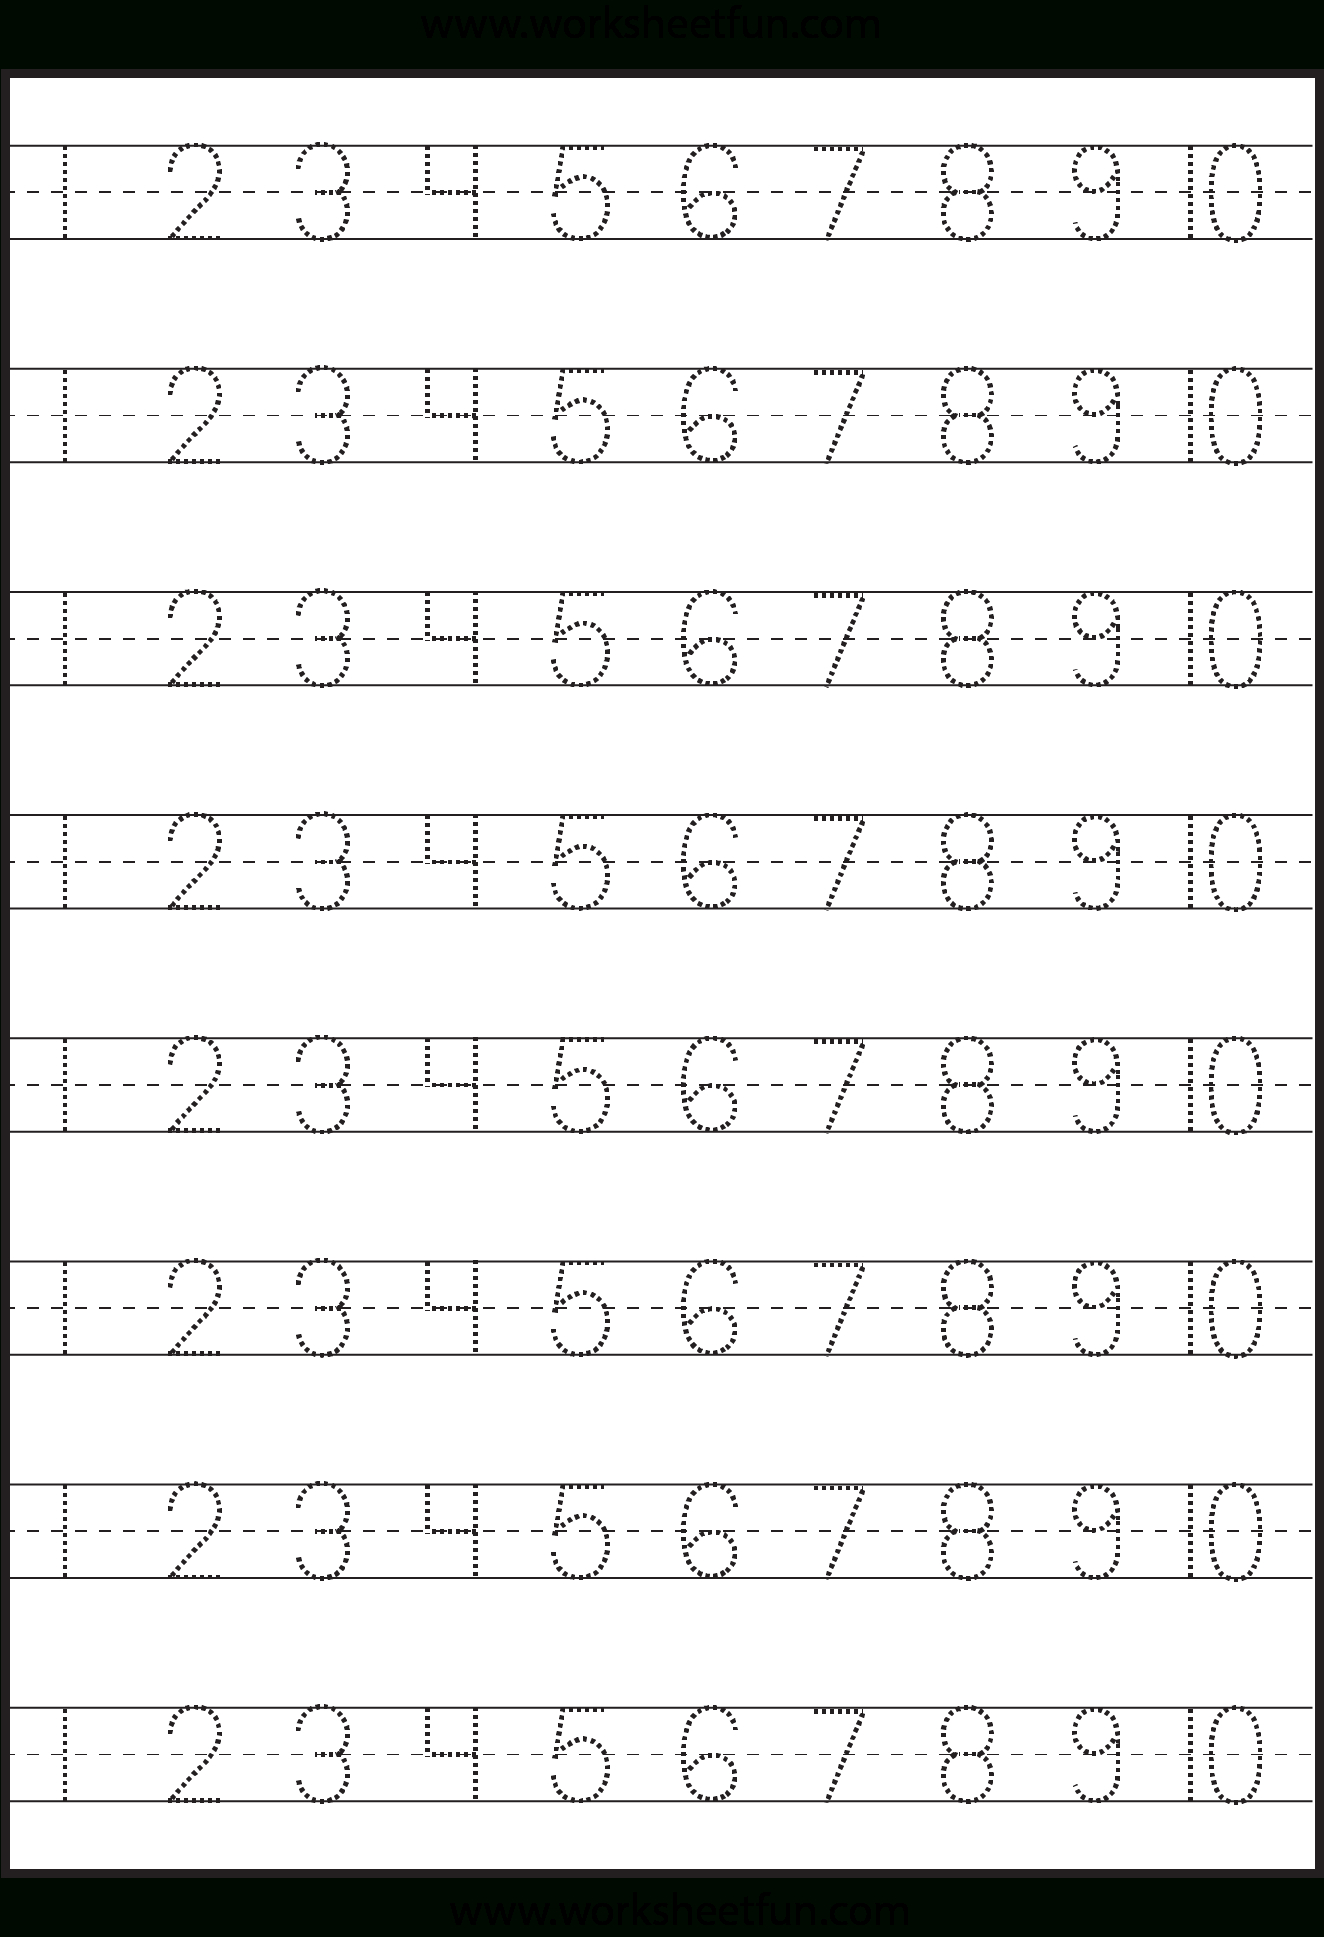 Number Tracing – 1-10 – Worksheet / Free Printable Worksheets | Numbers Printable Worksheets